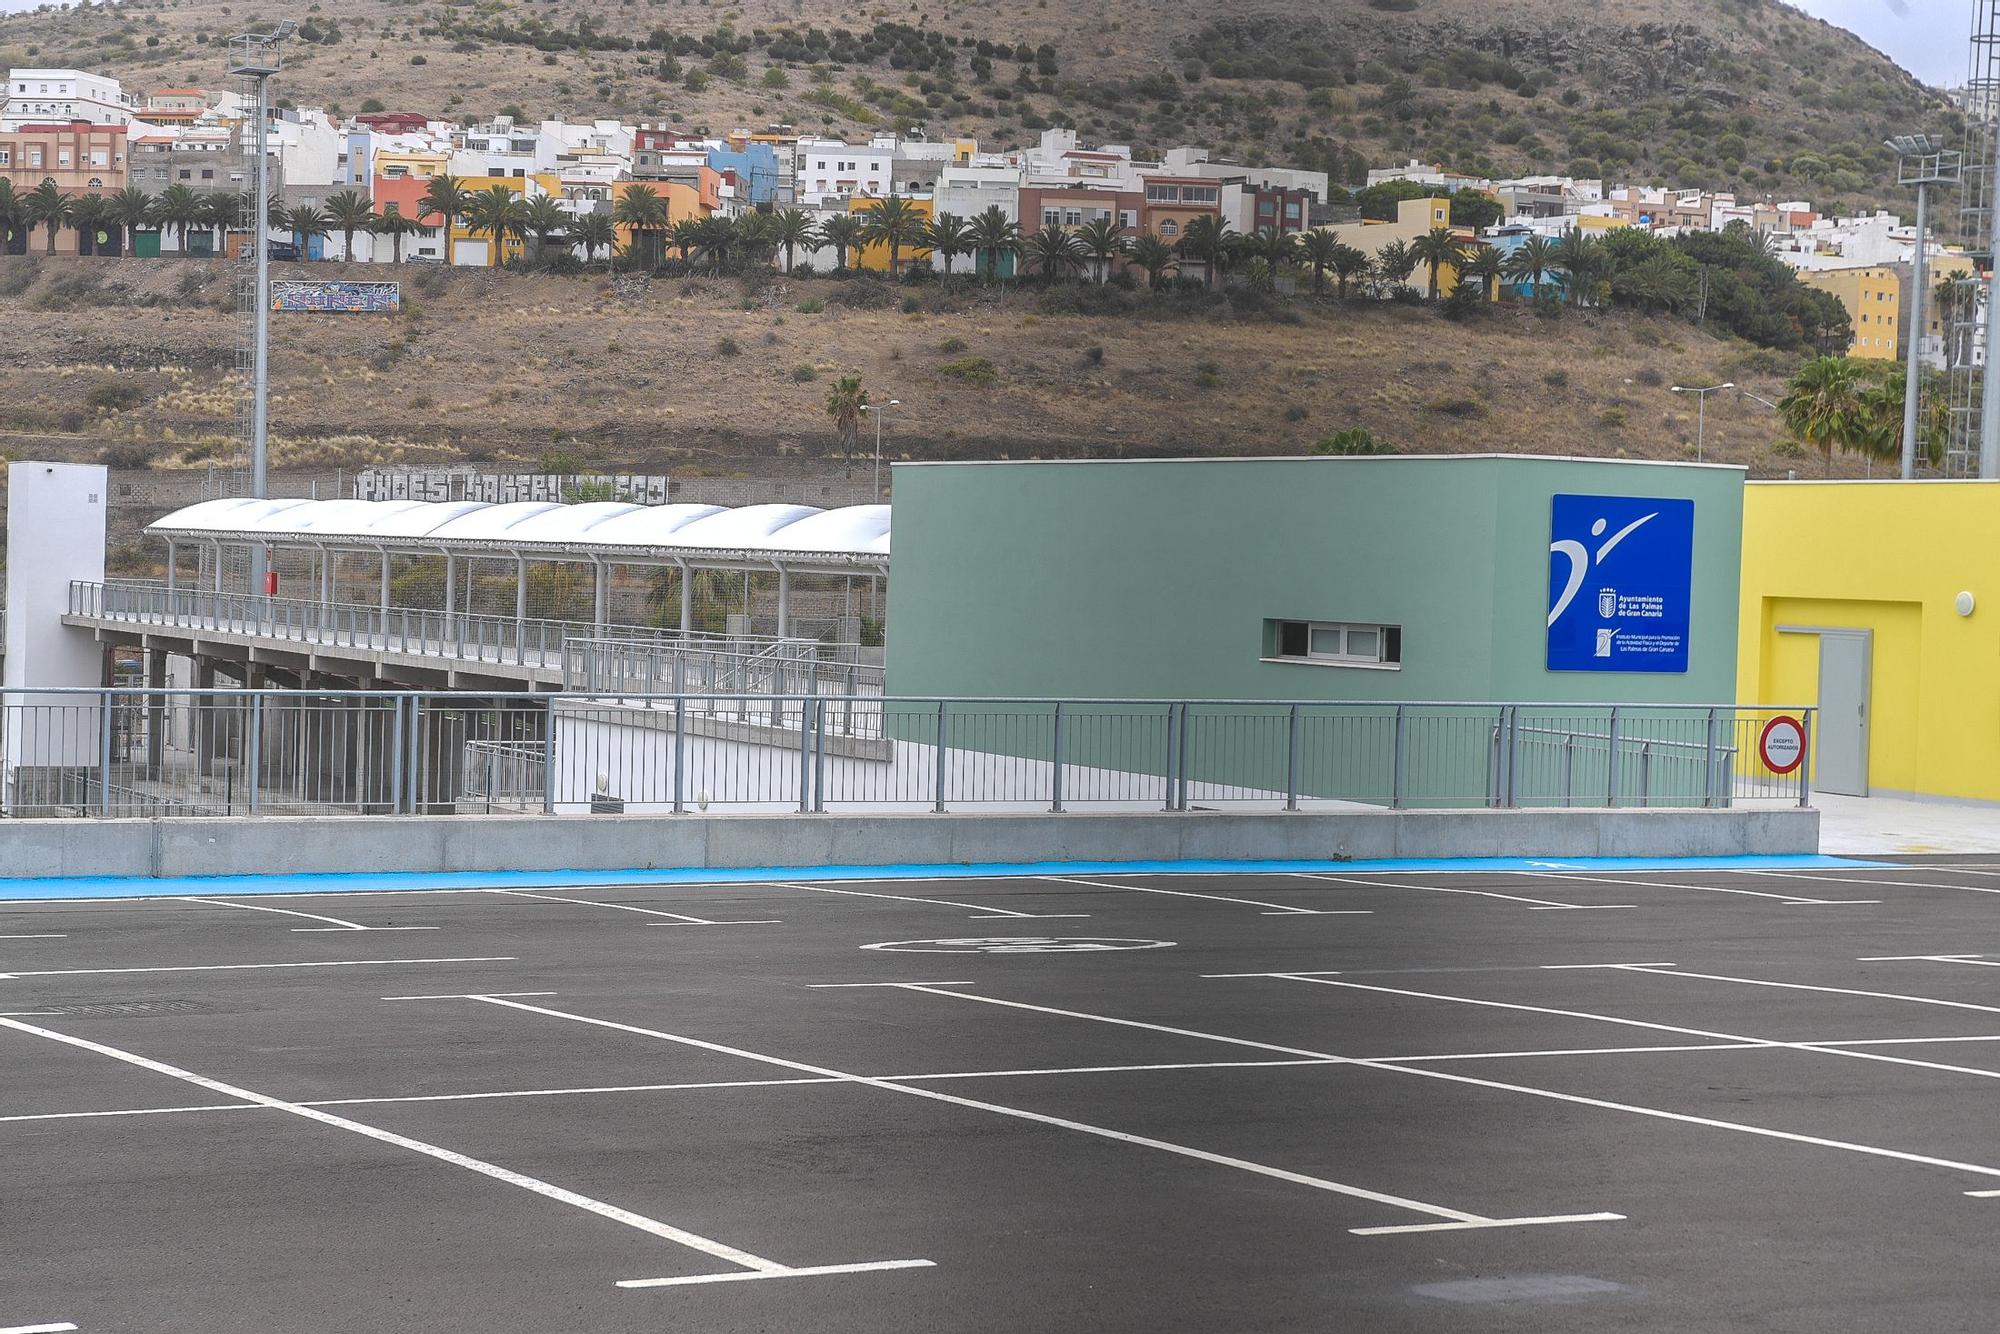 Campo de fútbol del barrio de La Suerte, en Las Palmas de Gran Canaria